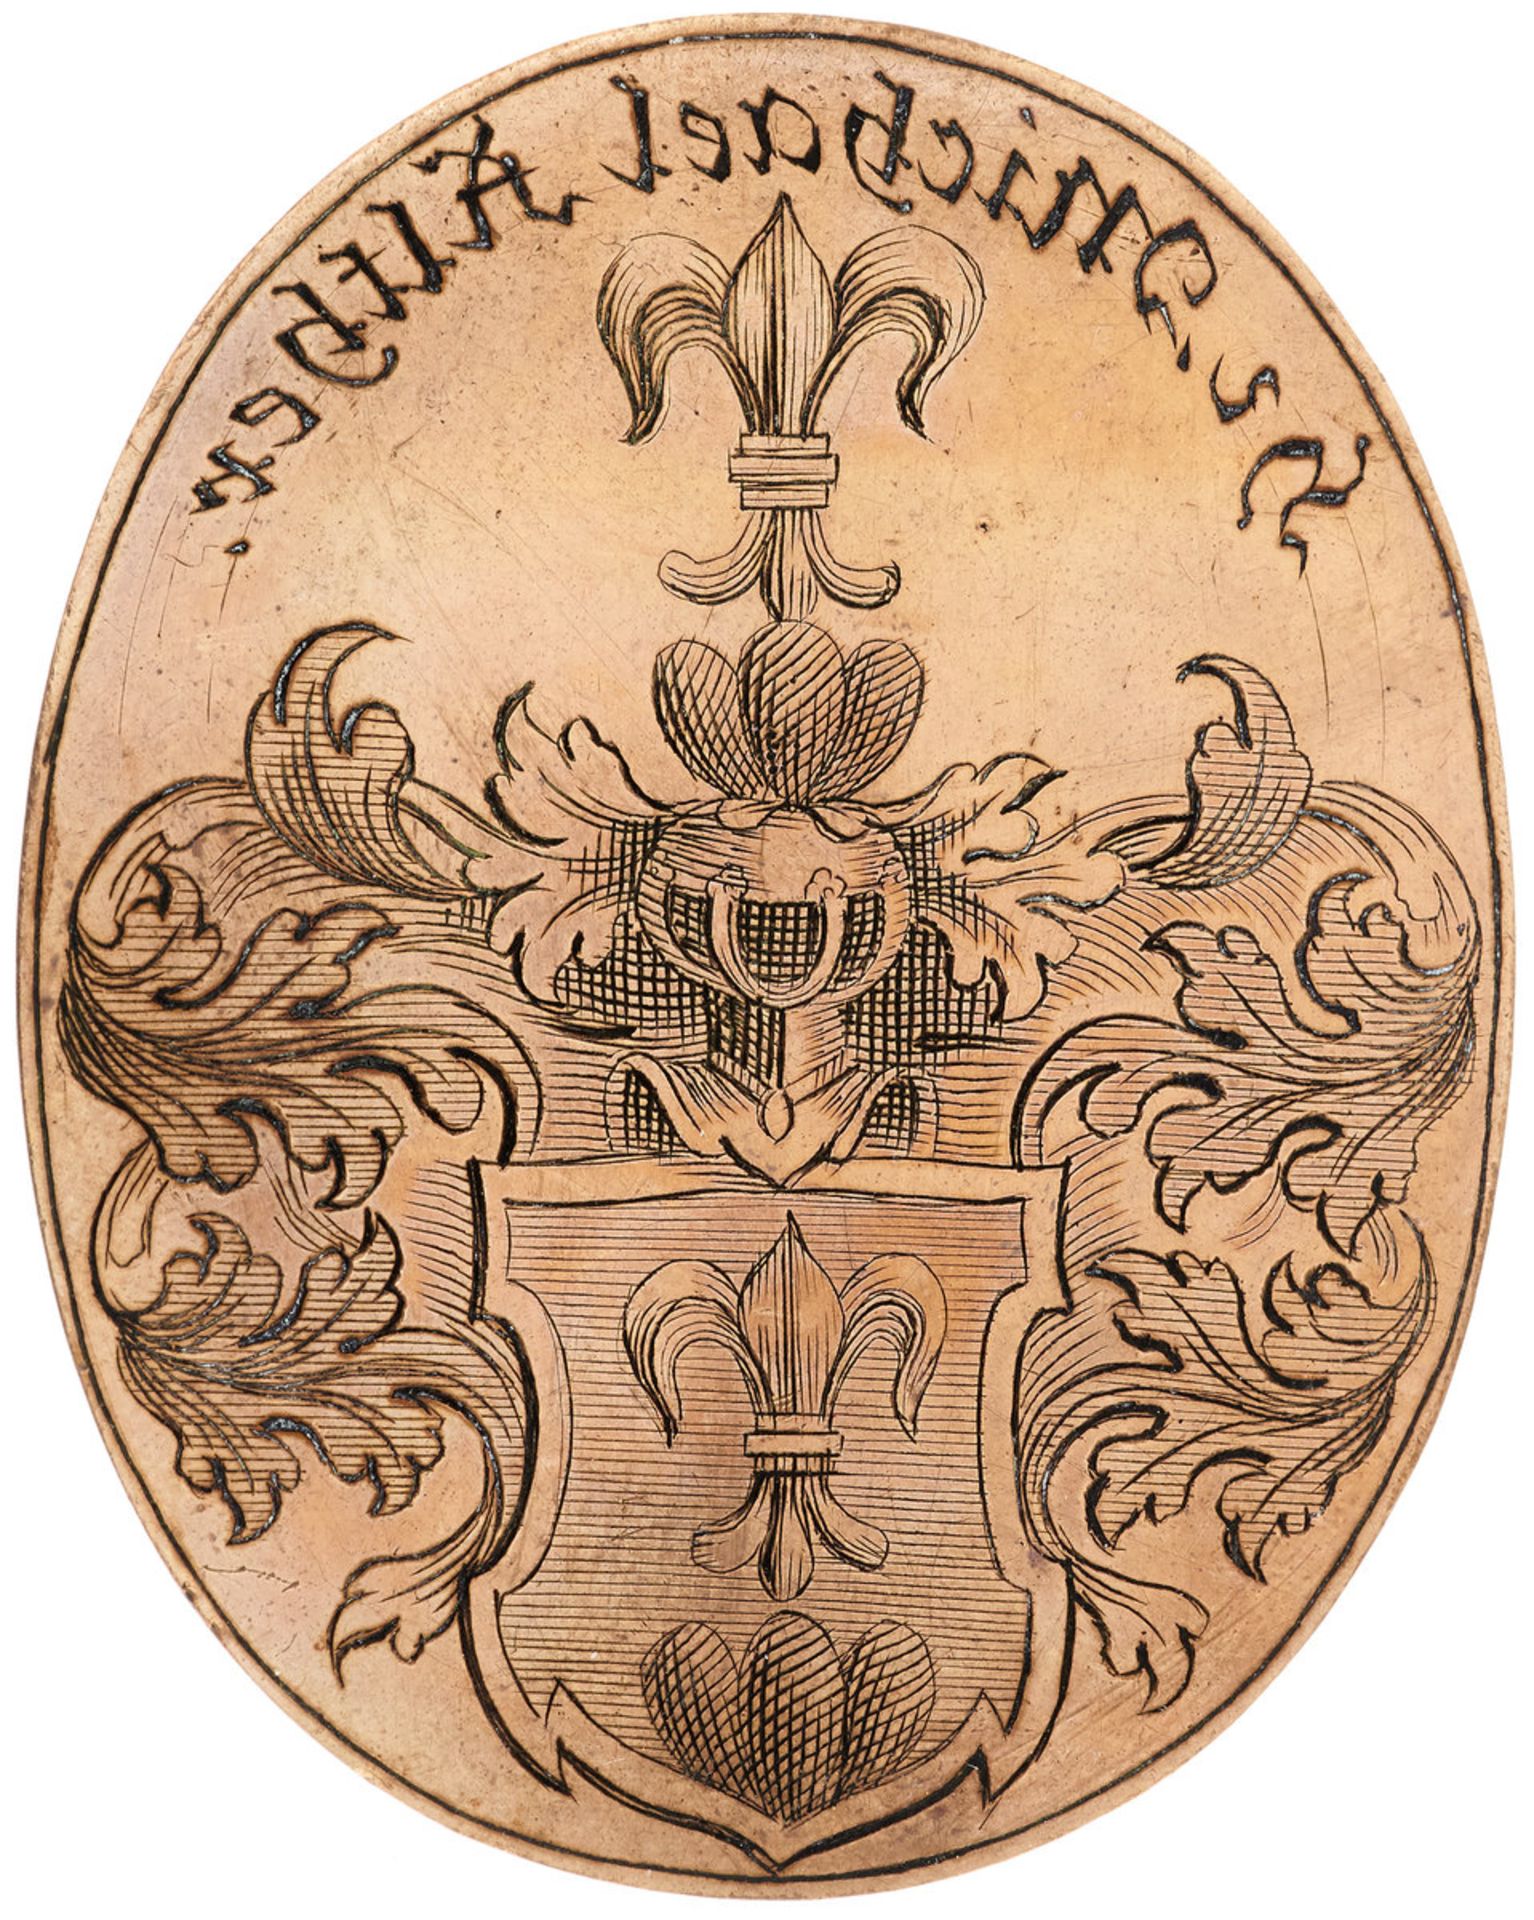 6 WappenplattenSchweiz, 18. Jh. Kupfer-Druckplatten mit fein gravierten Wappen und Inschriften, u.a. - Bild 5 aus 8